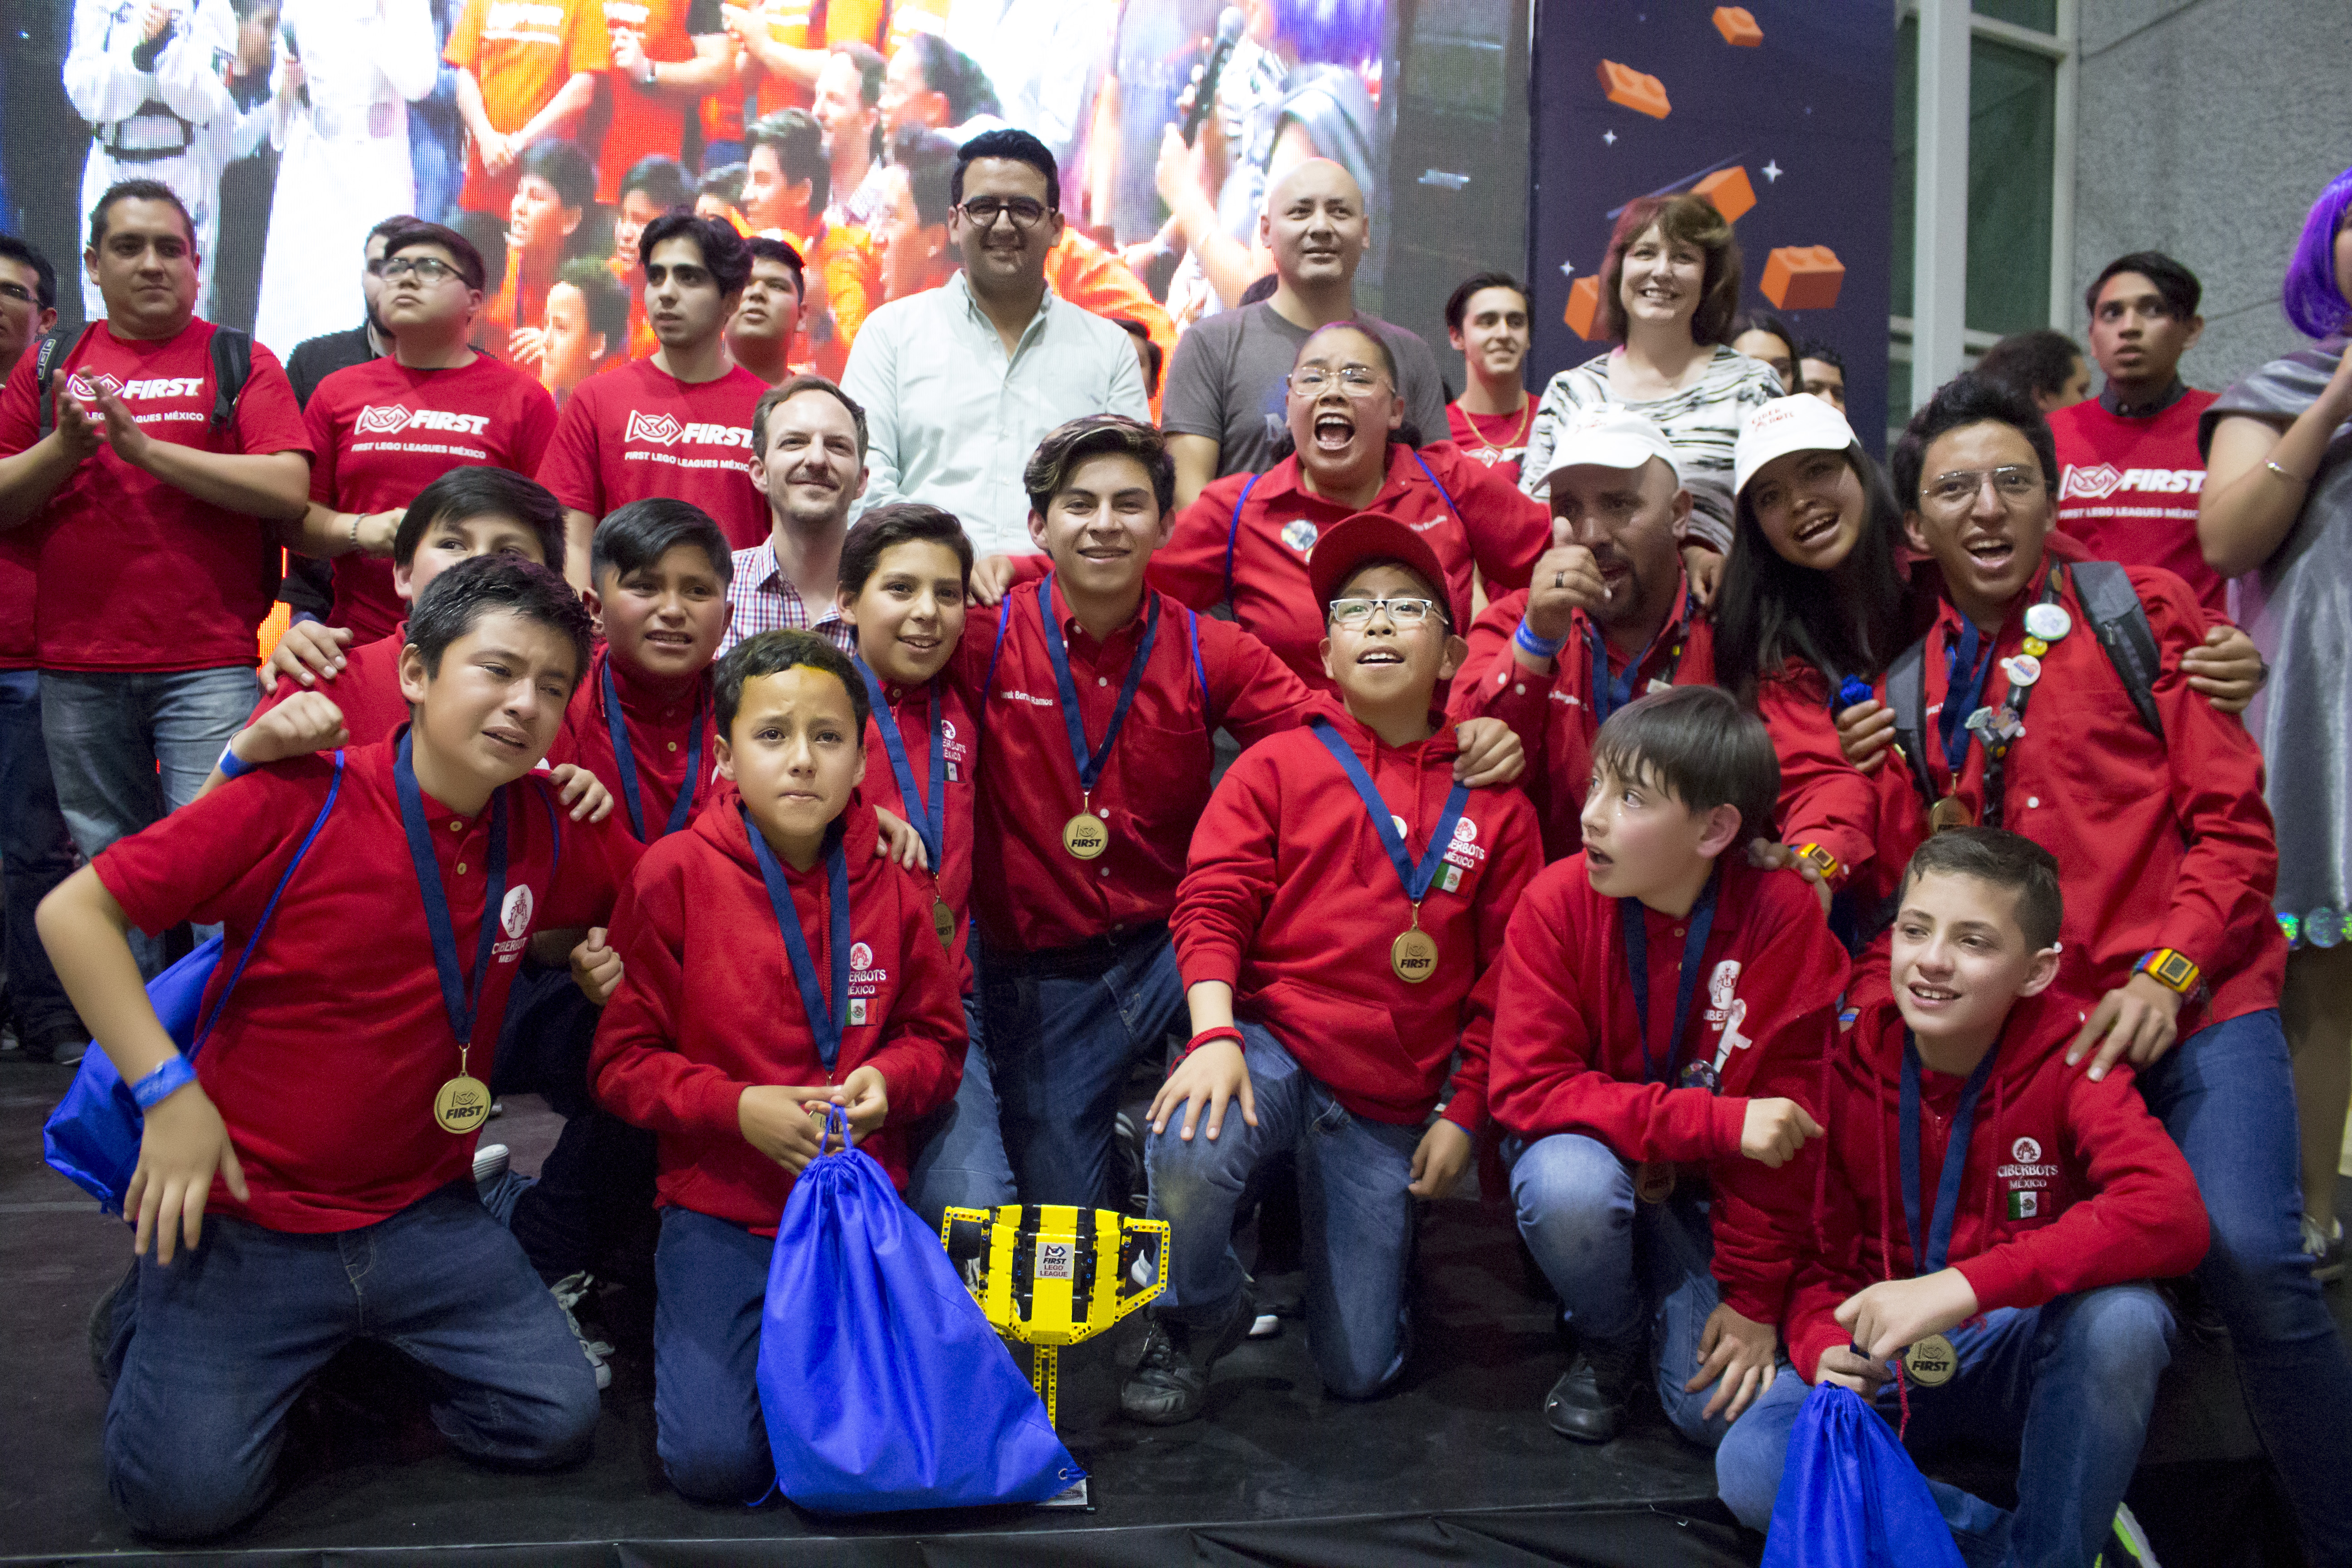 Con gran entusiasmo concluye el Campeonato Nacional de FIRST® LEGO® League en Monterrey: 12 equipos representarán al país en torneos internacionales de robótica.